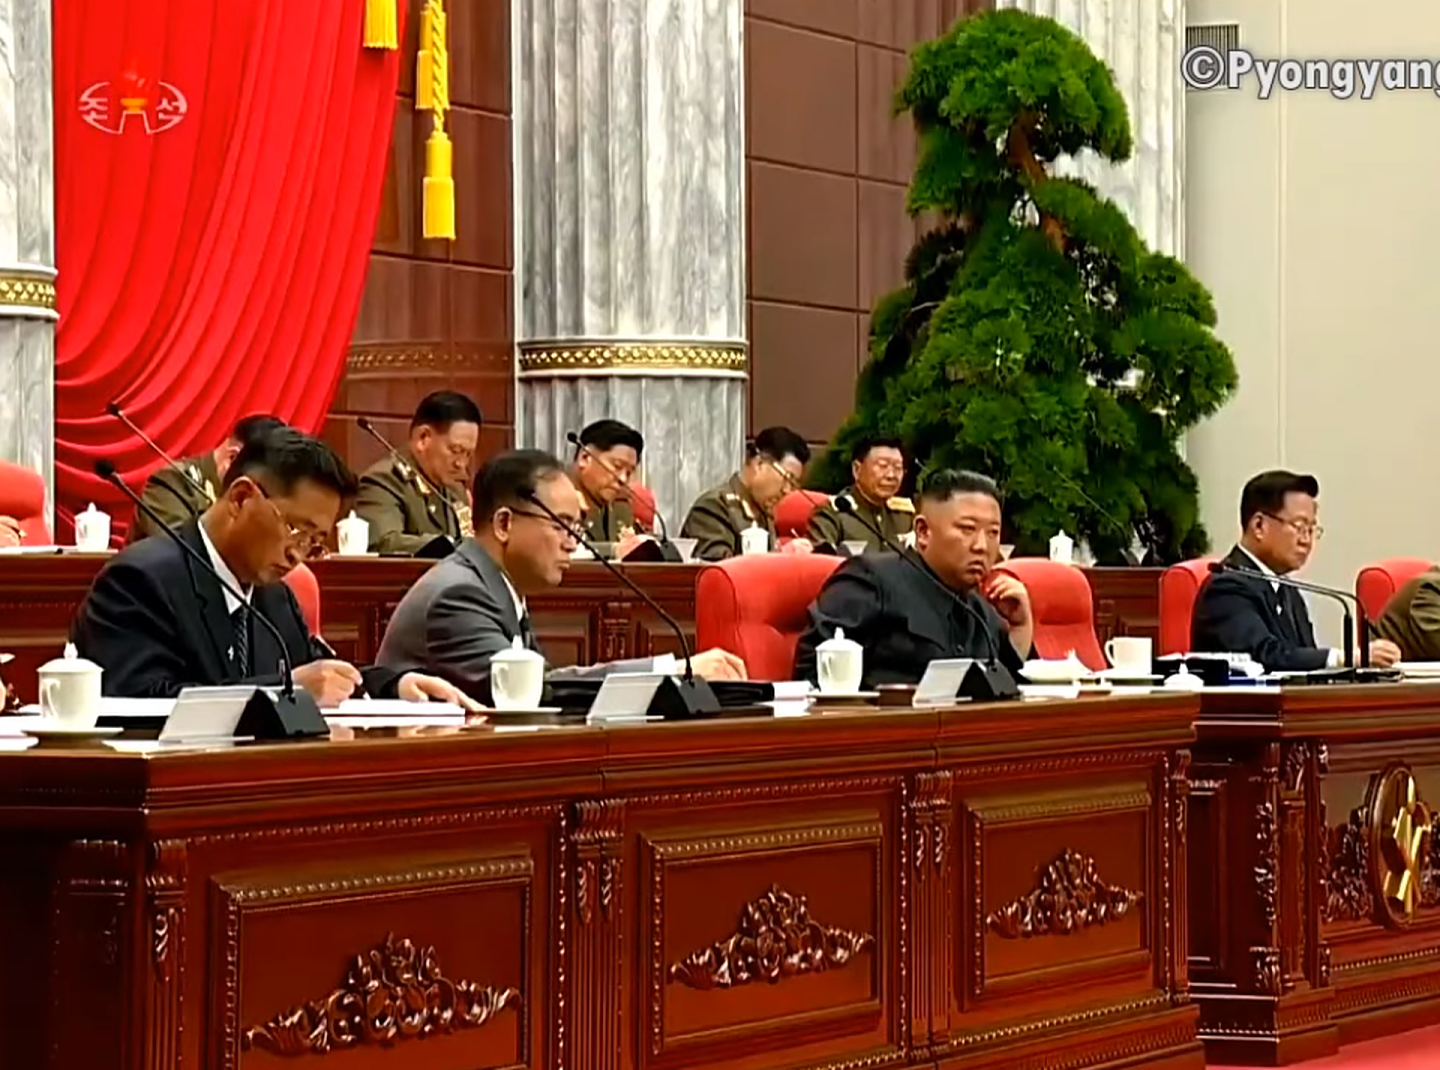 朝鲜官方公开视频画面显示，朝鲜领导人金正恩（前排左三）会议现场表情严肃。（朝鲜中央电视台视频截图）